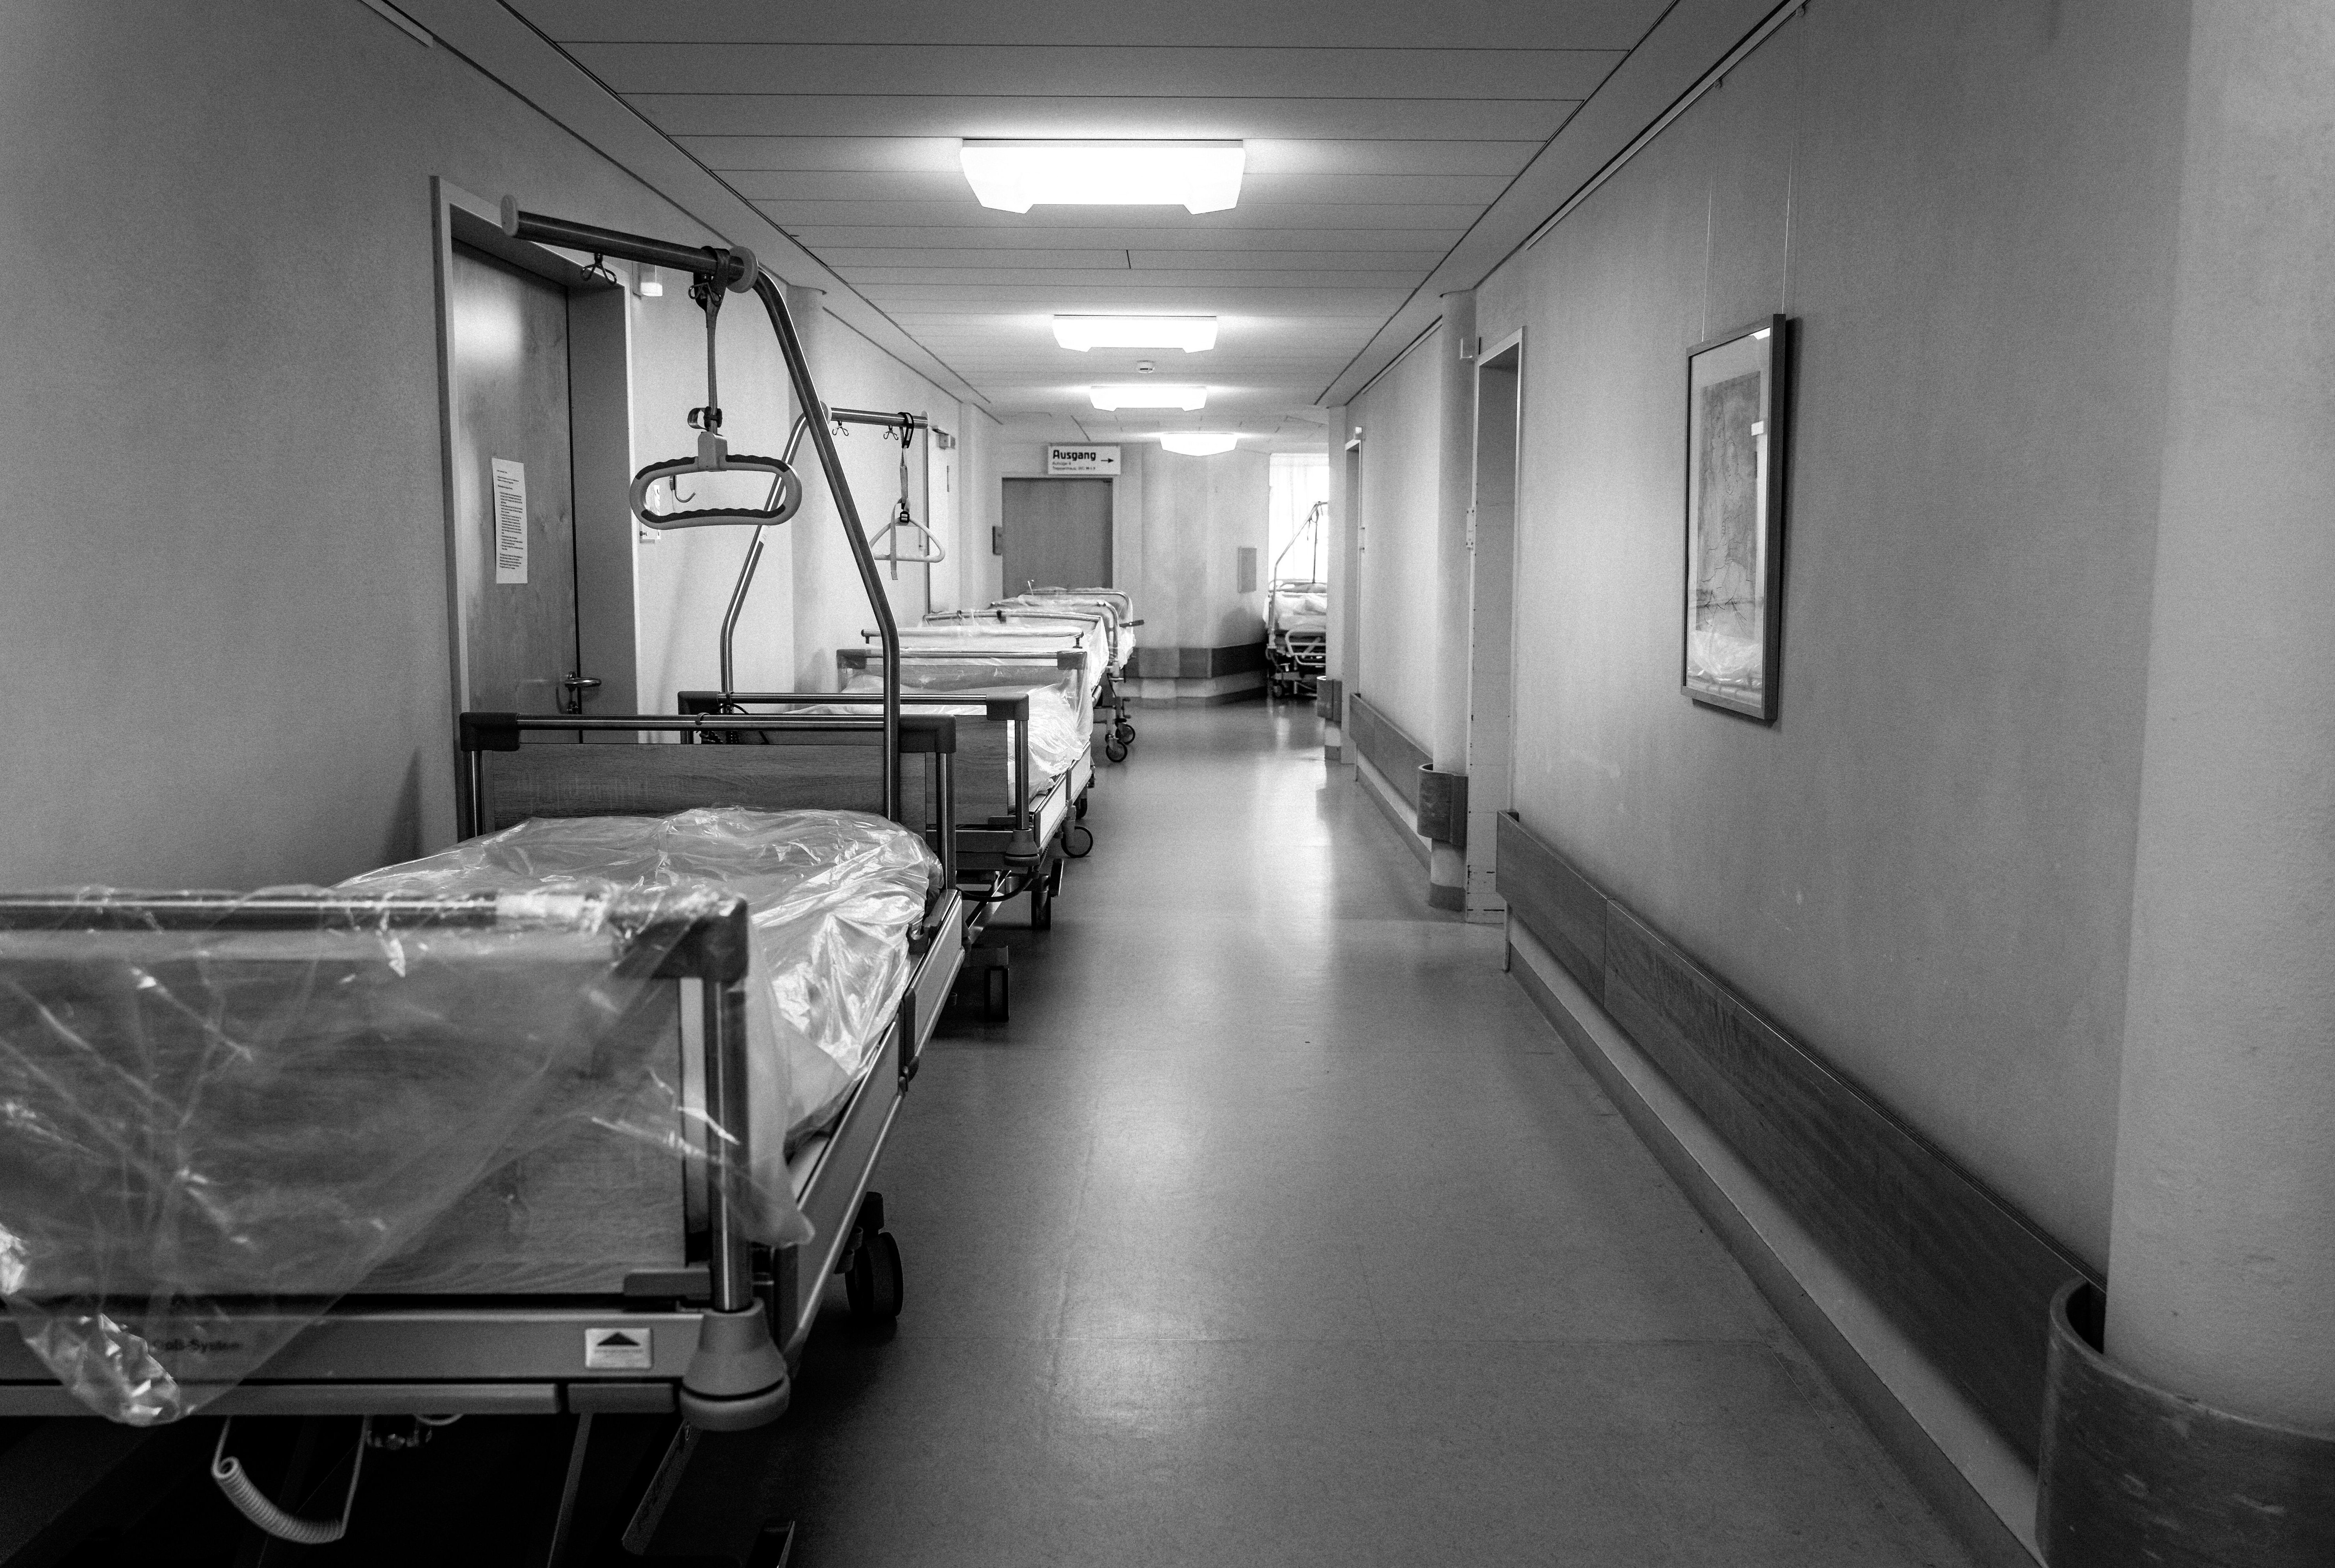 Das Foto zeigt einen Krankenhausflur. Auf der linken Seite des Flures stehen zwei mit Folie bedeckte Krankenhausbetten hintereinander. Die Farben des Fotos sind gräulich.